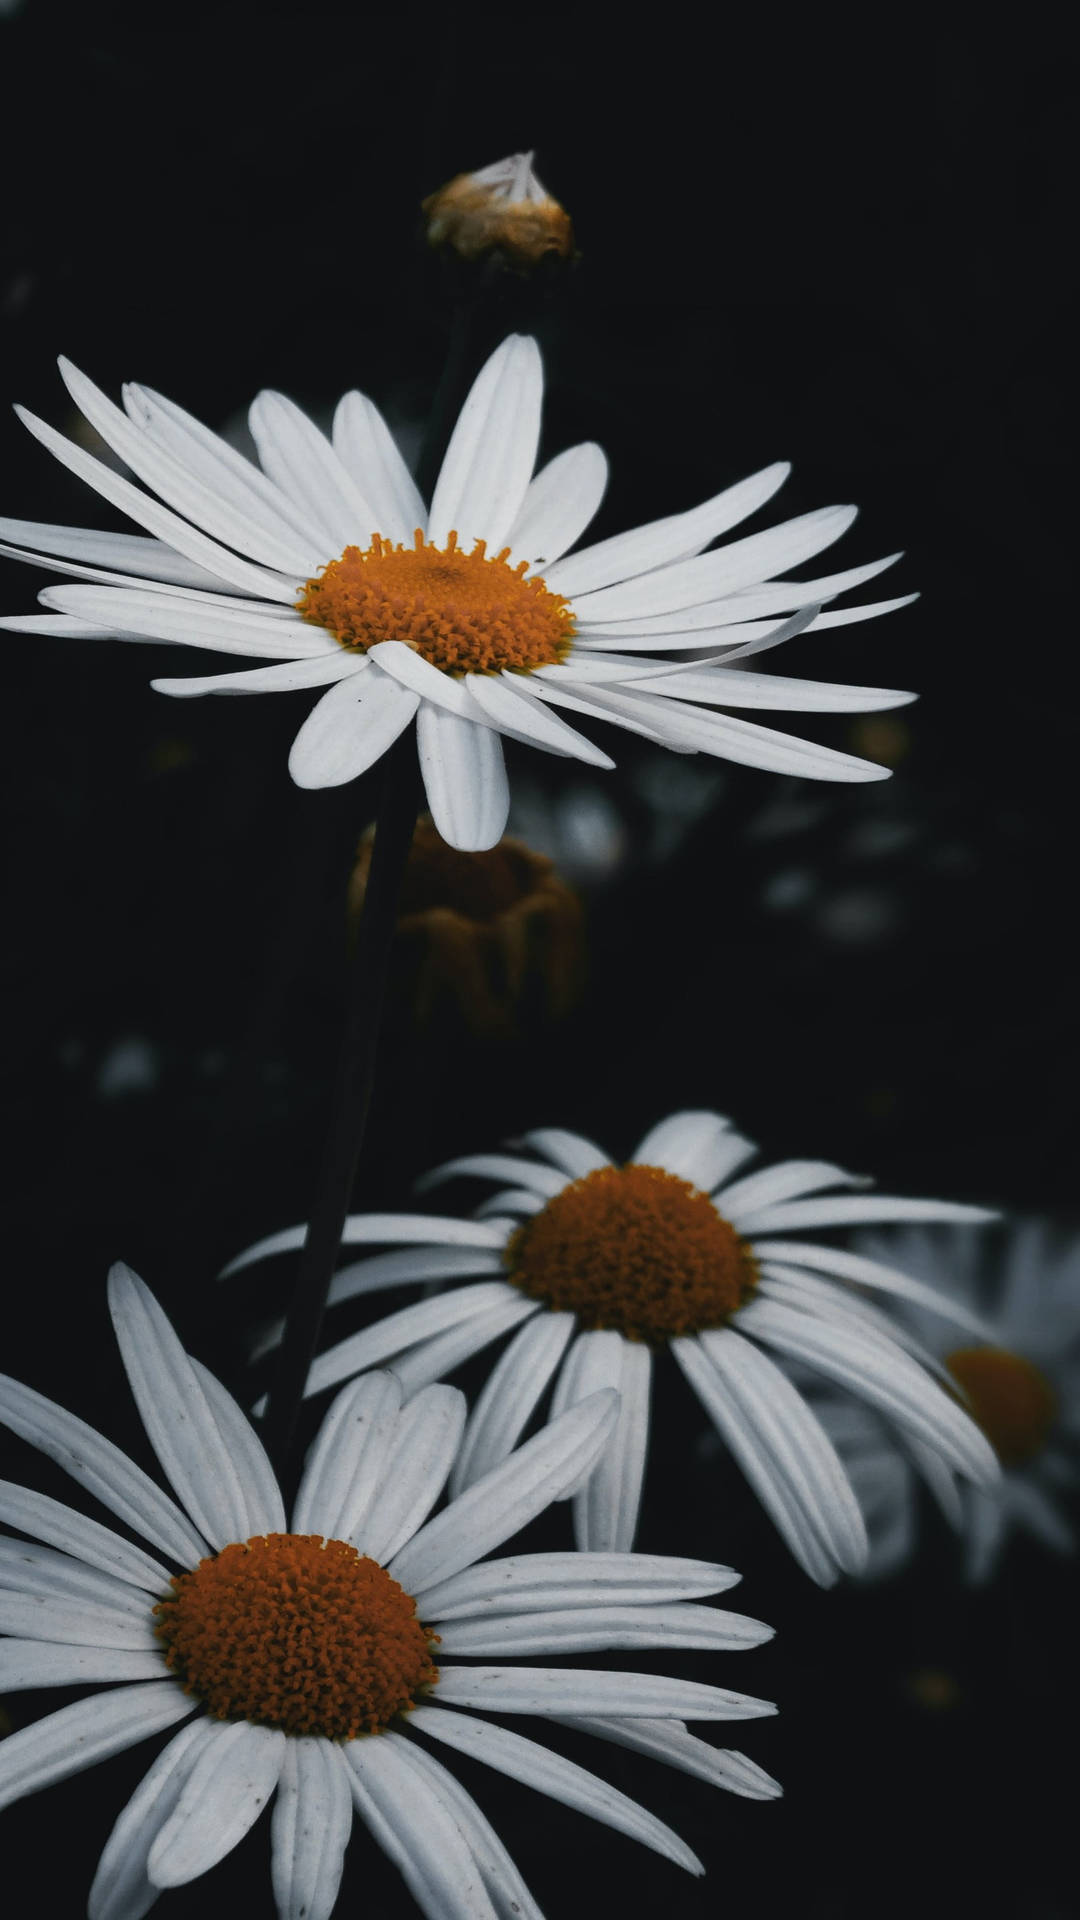 daisy flower black and white wallpaper